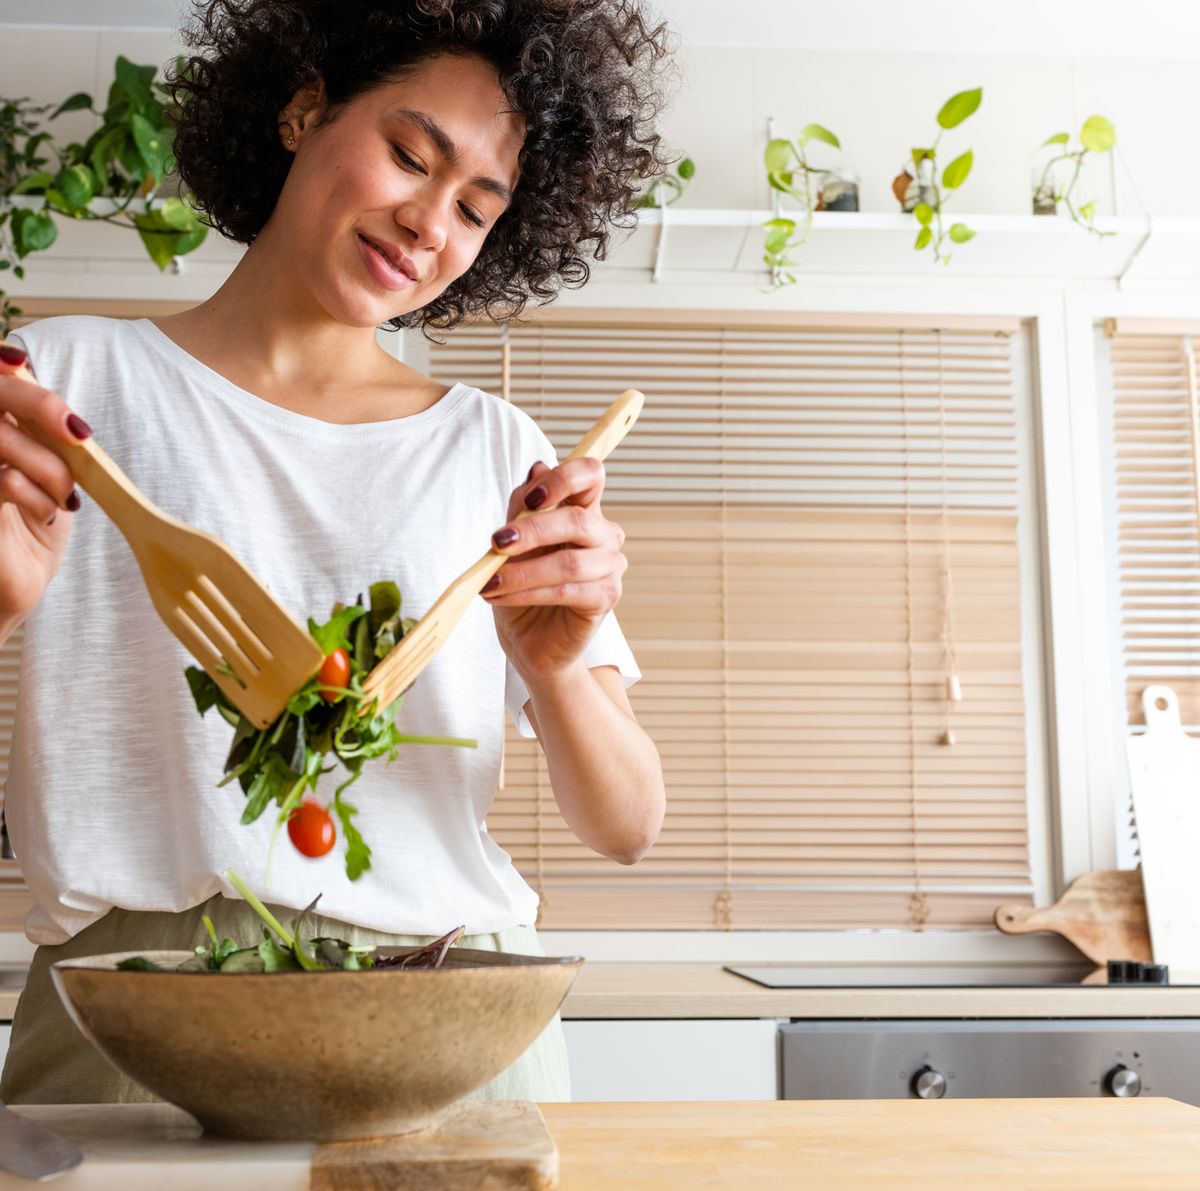 Cocina saludable: 15 utensilios y accesorios para cocinar más sano